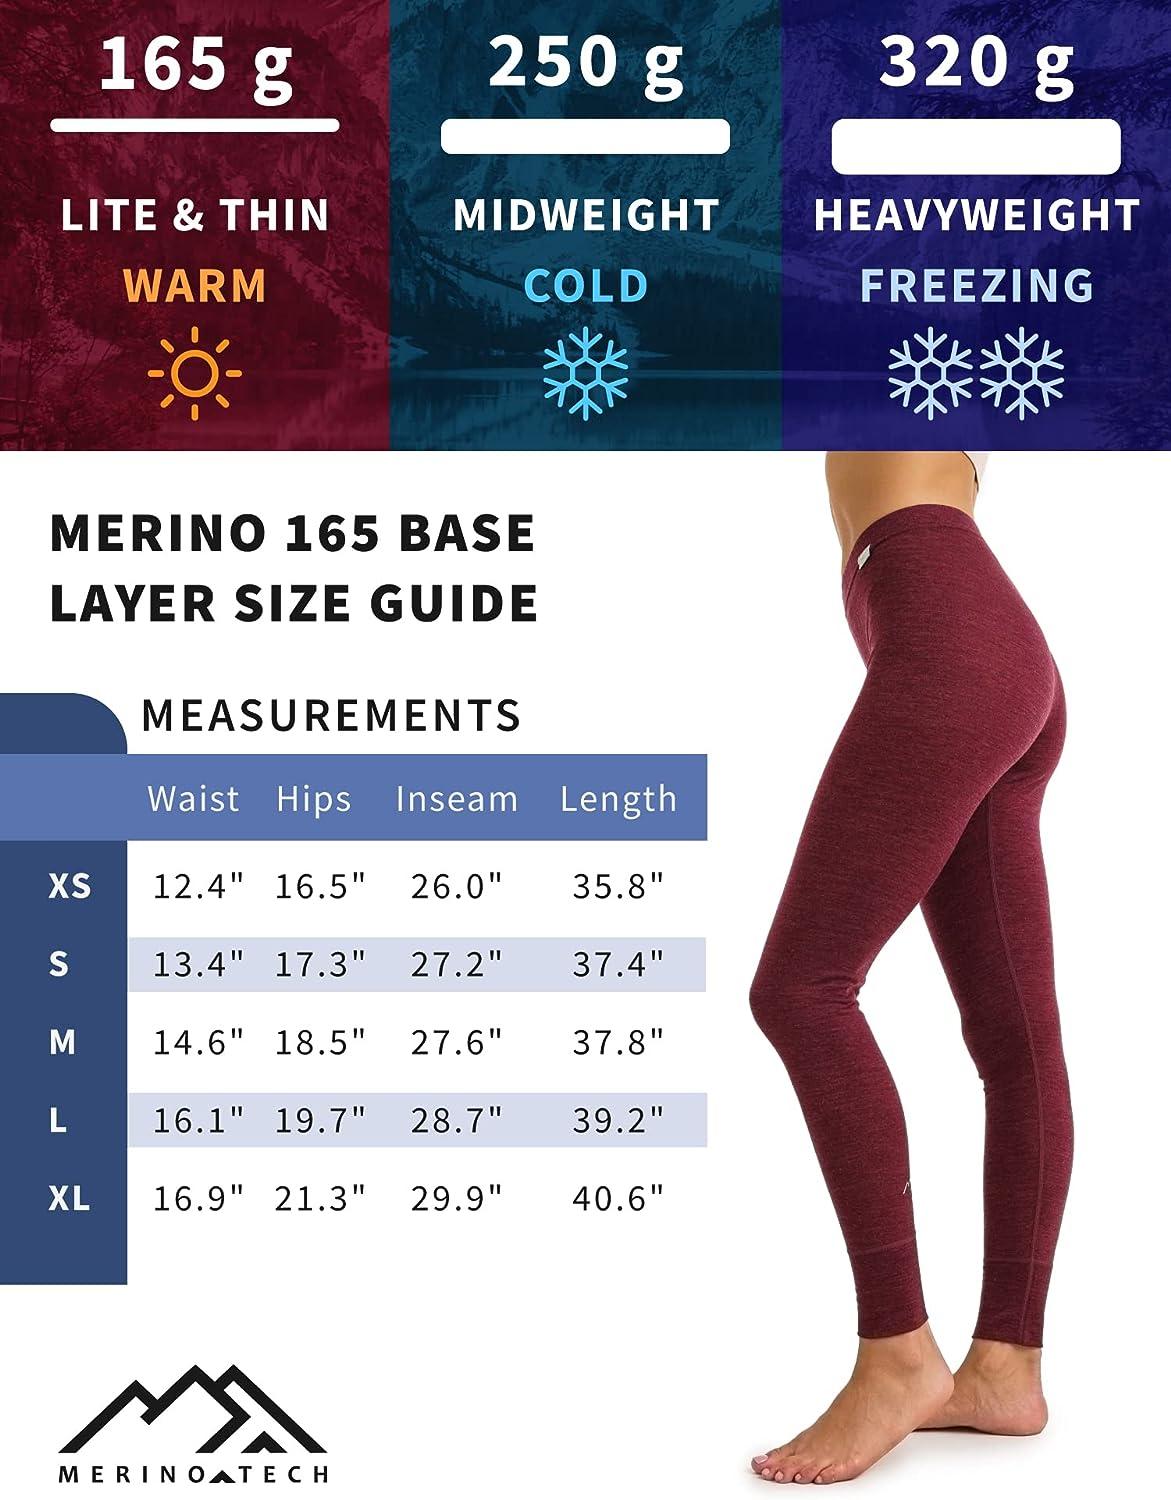  Merinotech Merino Wool Base Layer Women Set - Lightweight  Merino Wool Thermal Underwear For Women Top And Bottom